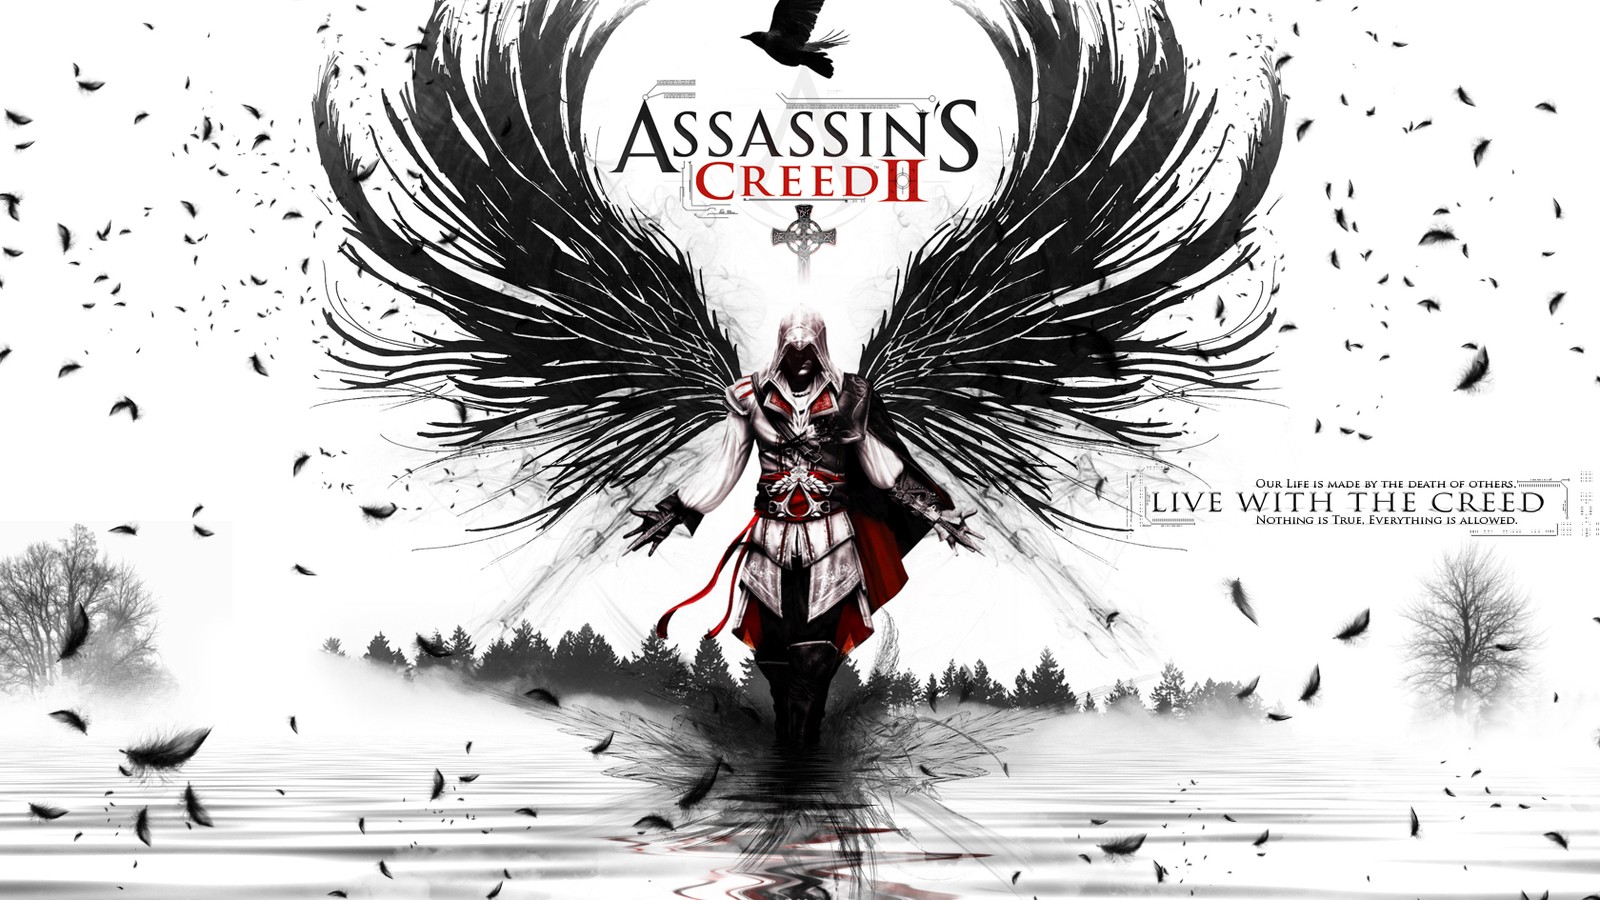 Assassins Creed, Assassins Creed: Revelations, Assassins Creed 2, Ezio Auditore Da Firenze Wallpaper